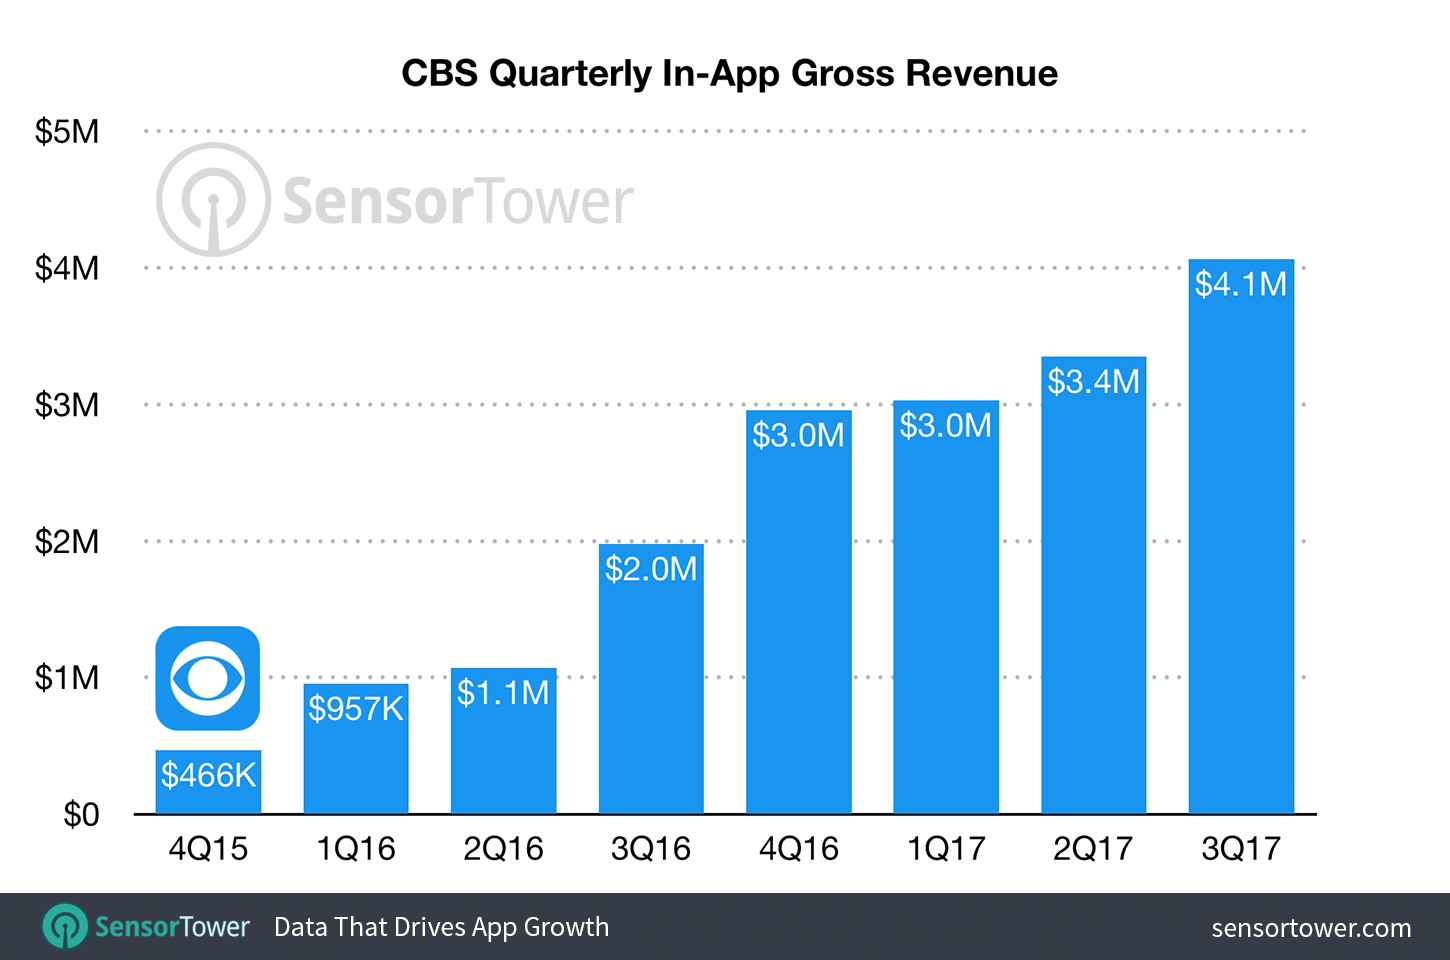 CBS mobile apps quarterly gross revenue beginning in Q4 2015